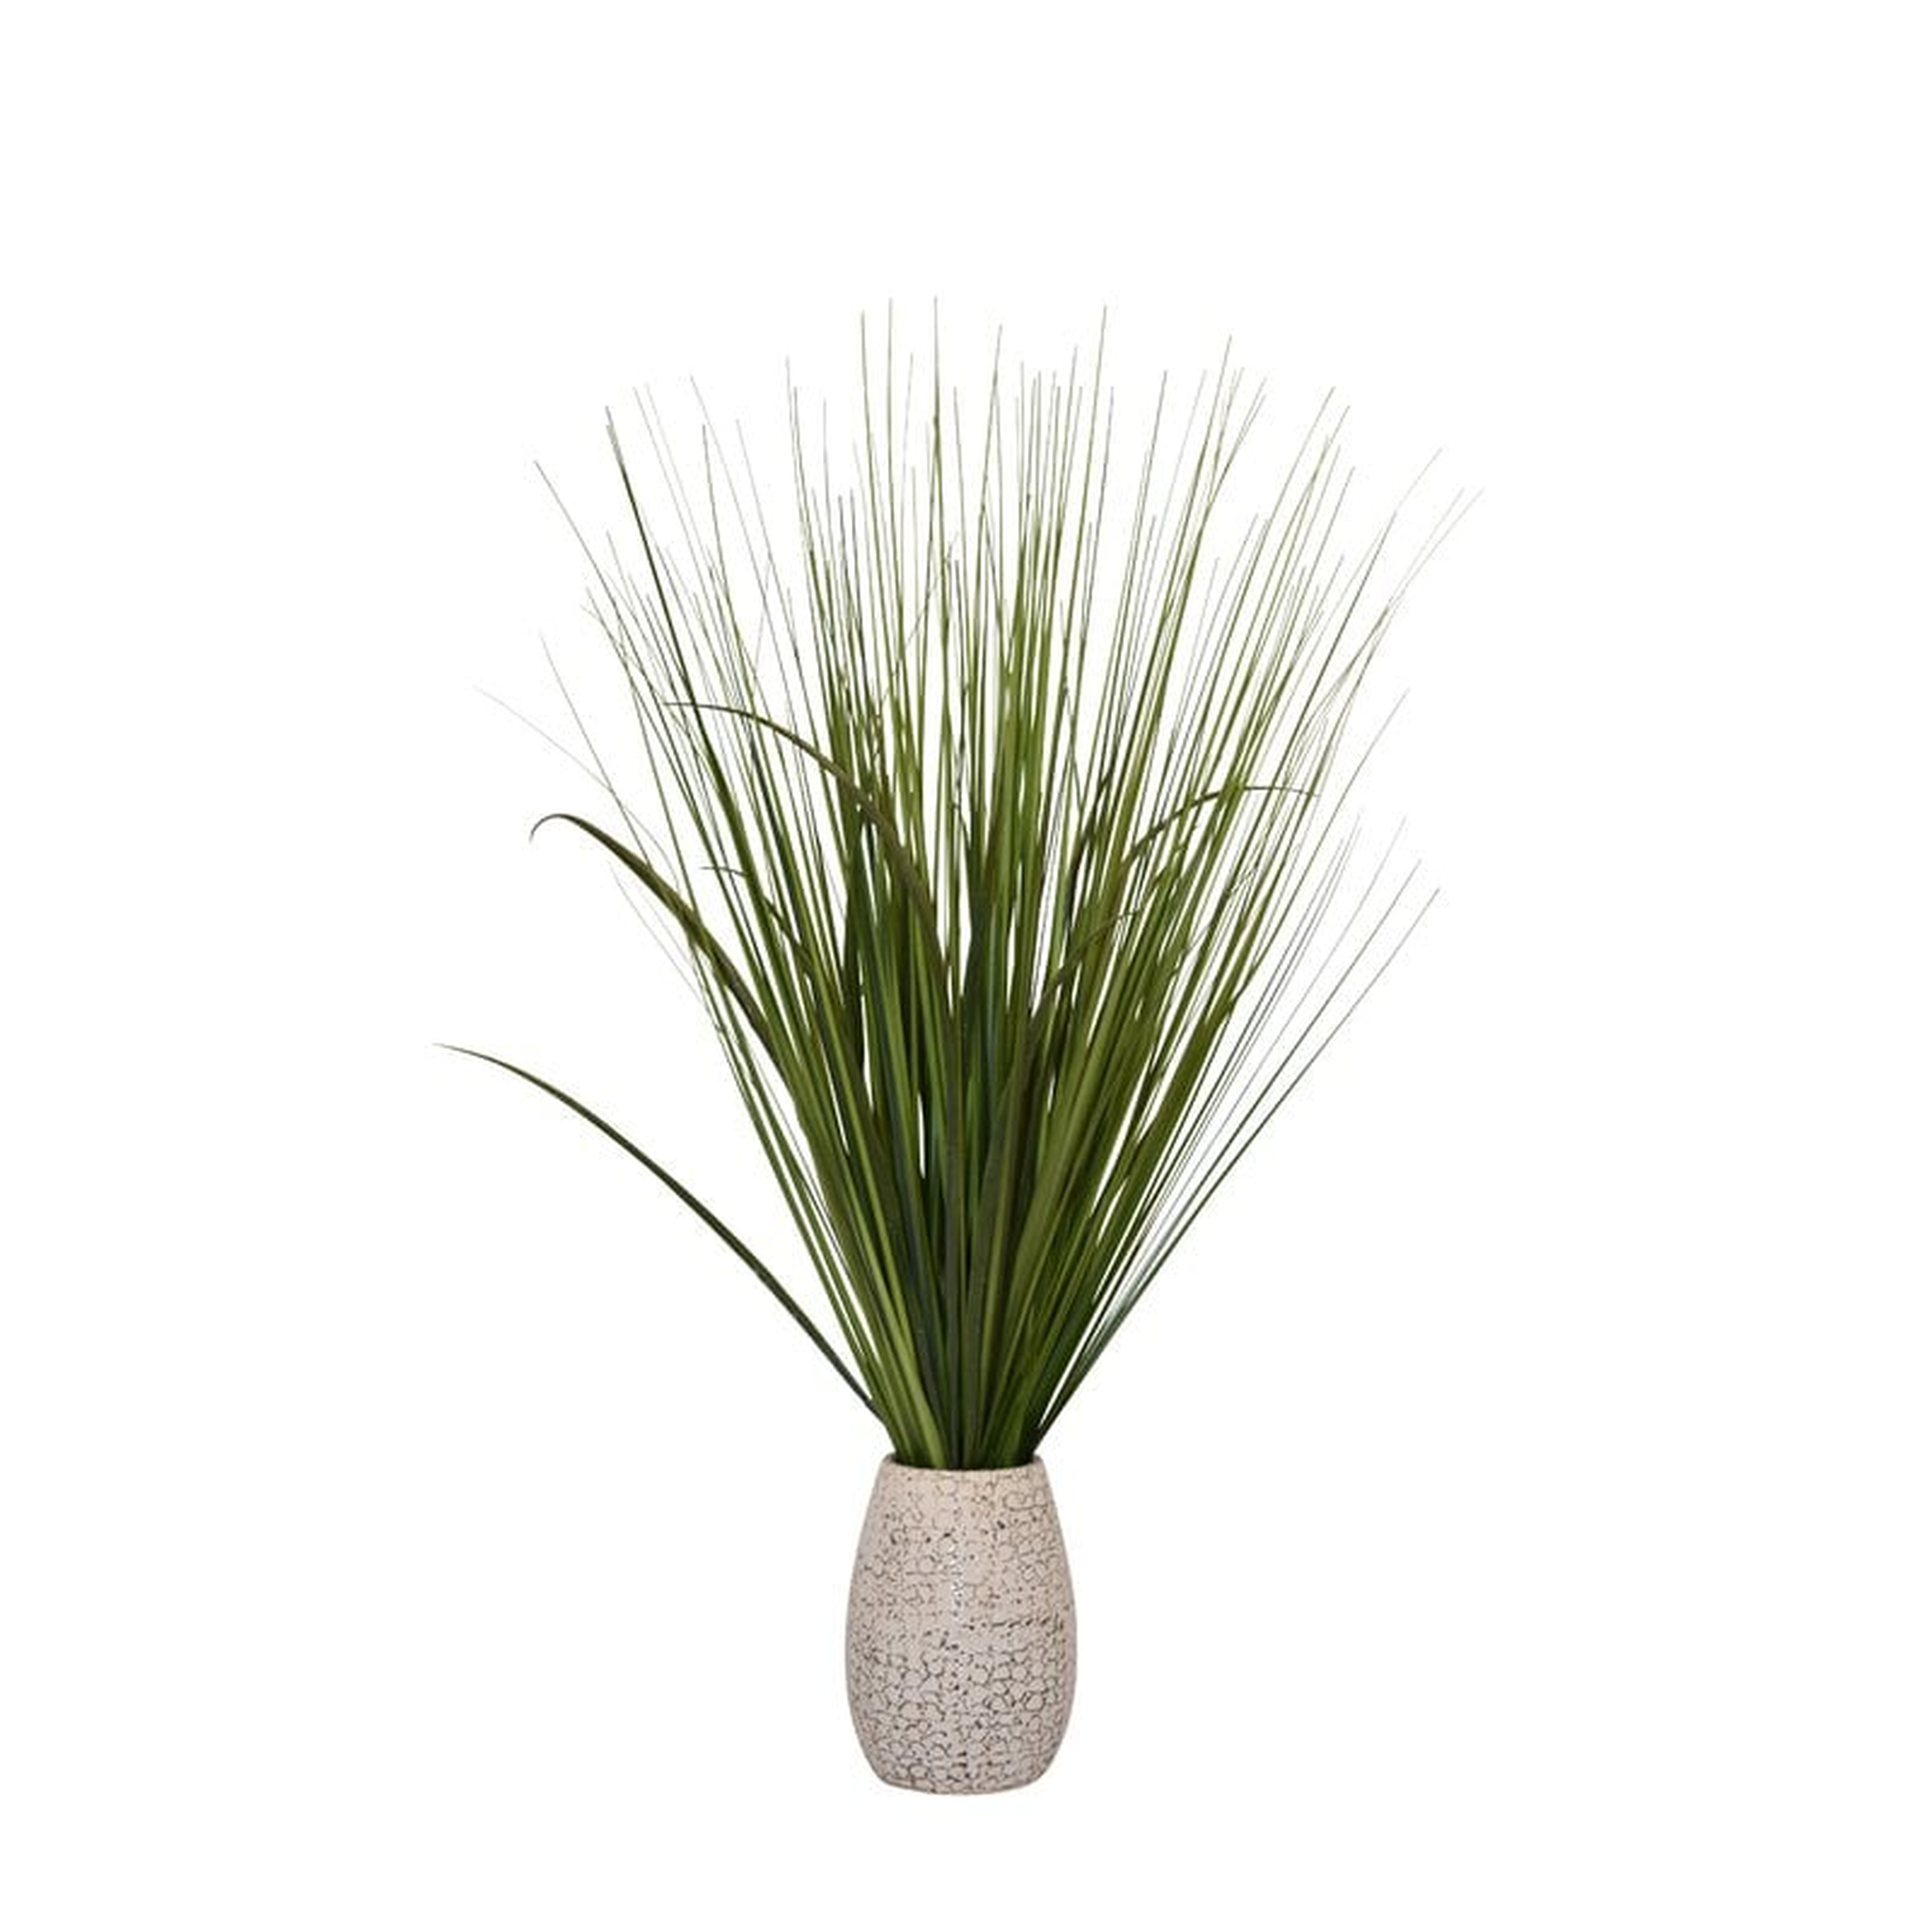 30" Artificial Foliage Grass in Pot - Wayfair